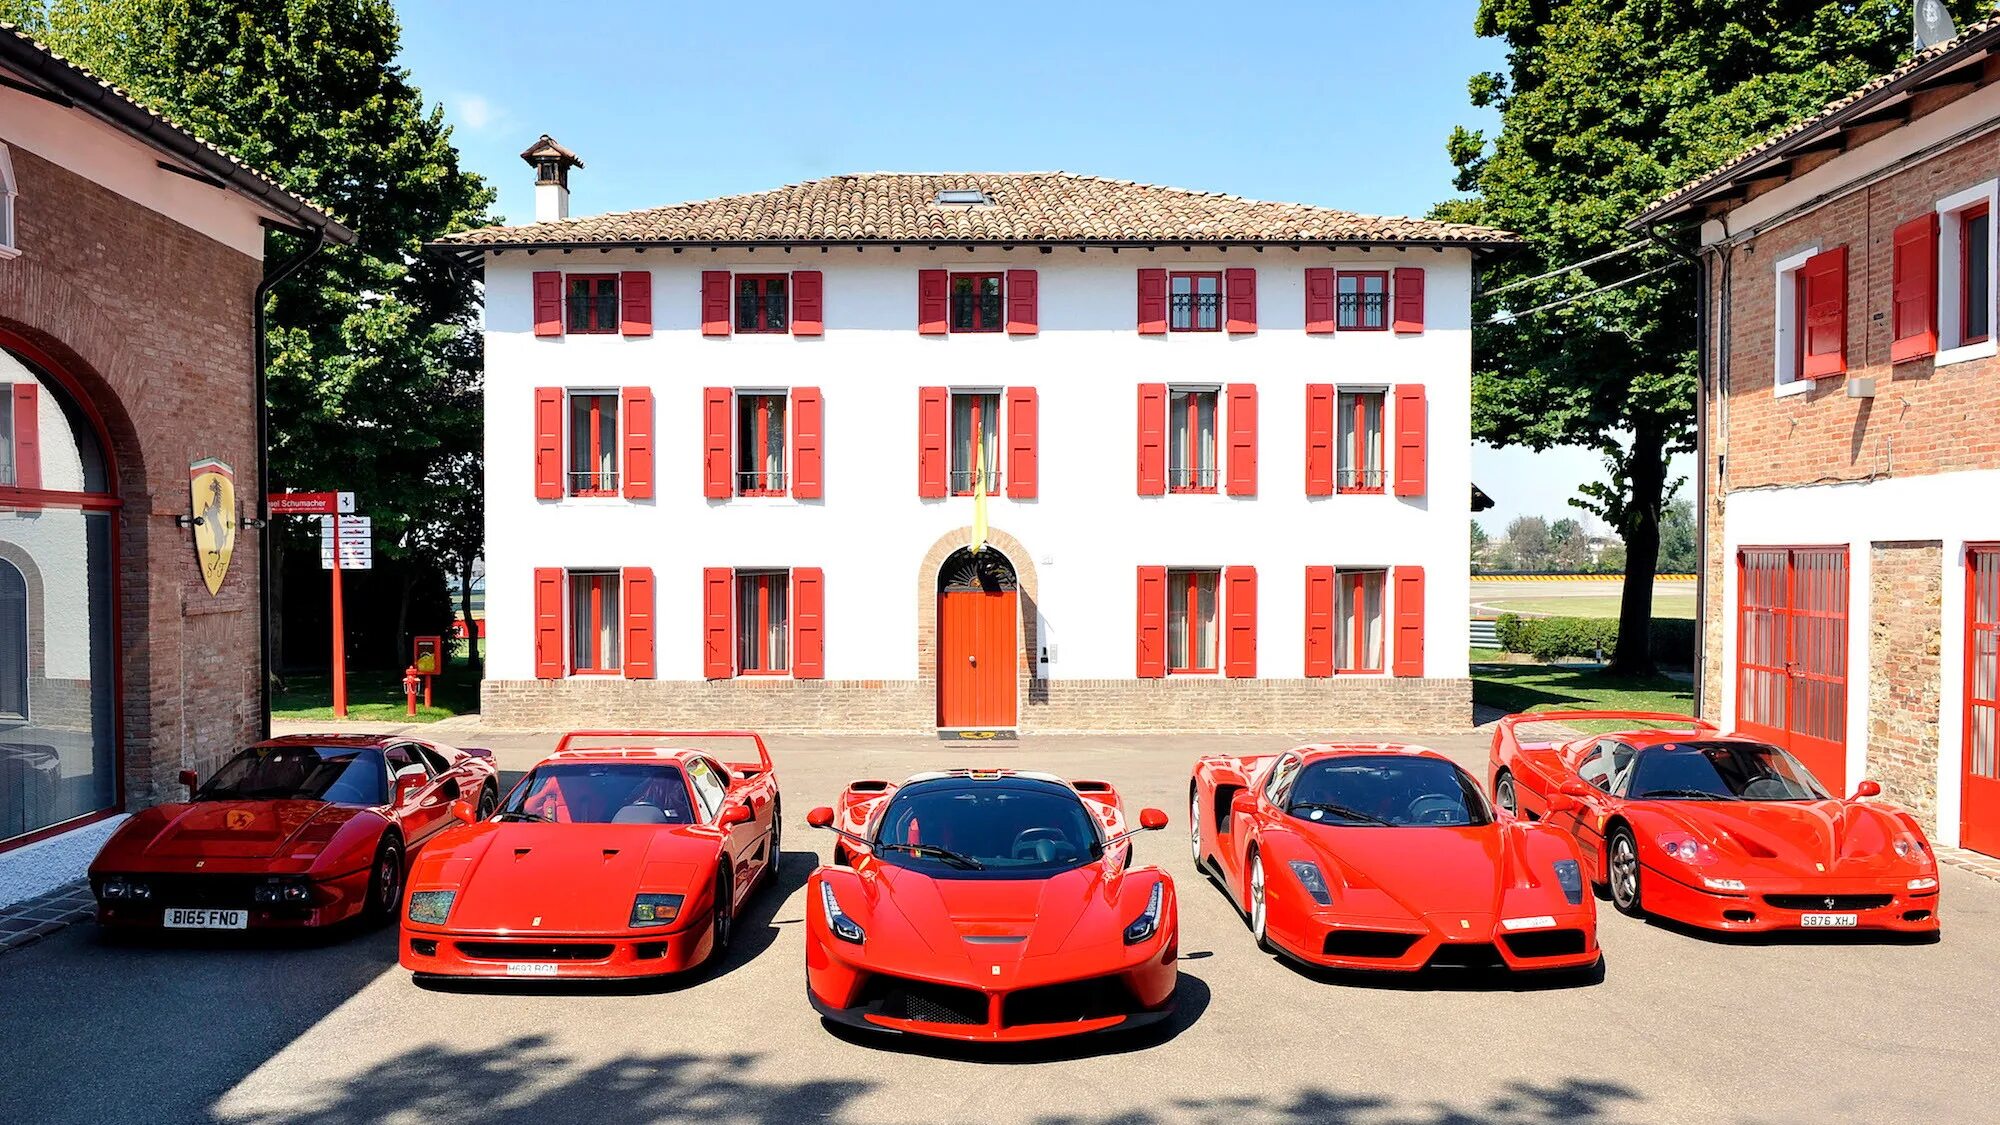 Ferrari LAFERRARI автомобили Италии. Дом Энцо Феррари. Яркие красные машины. Венеция магазин Феррари. Ferrari collection